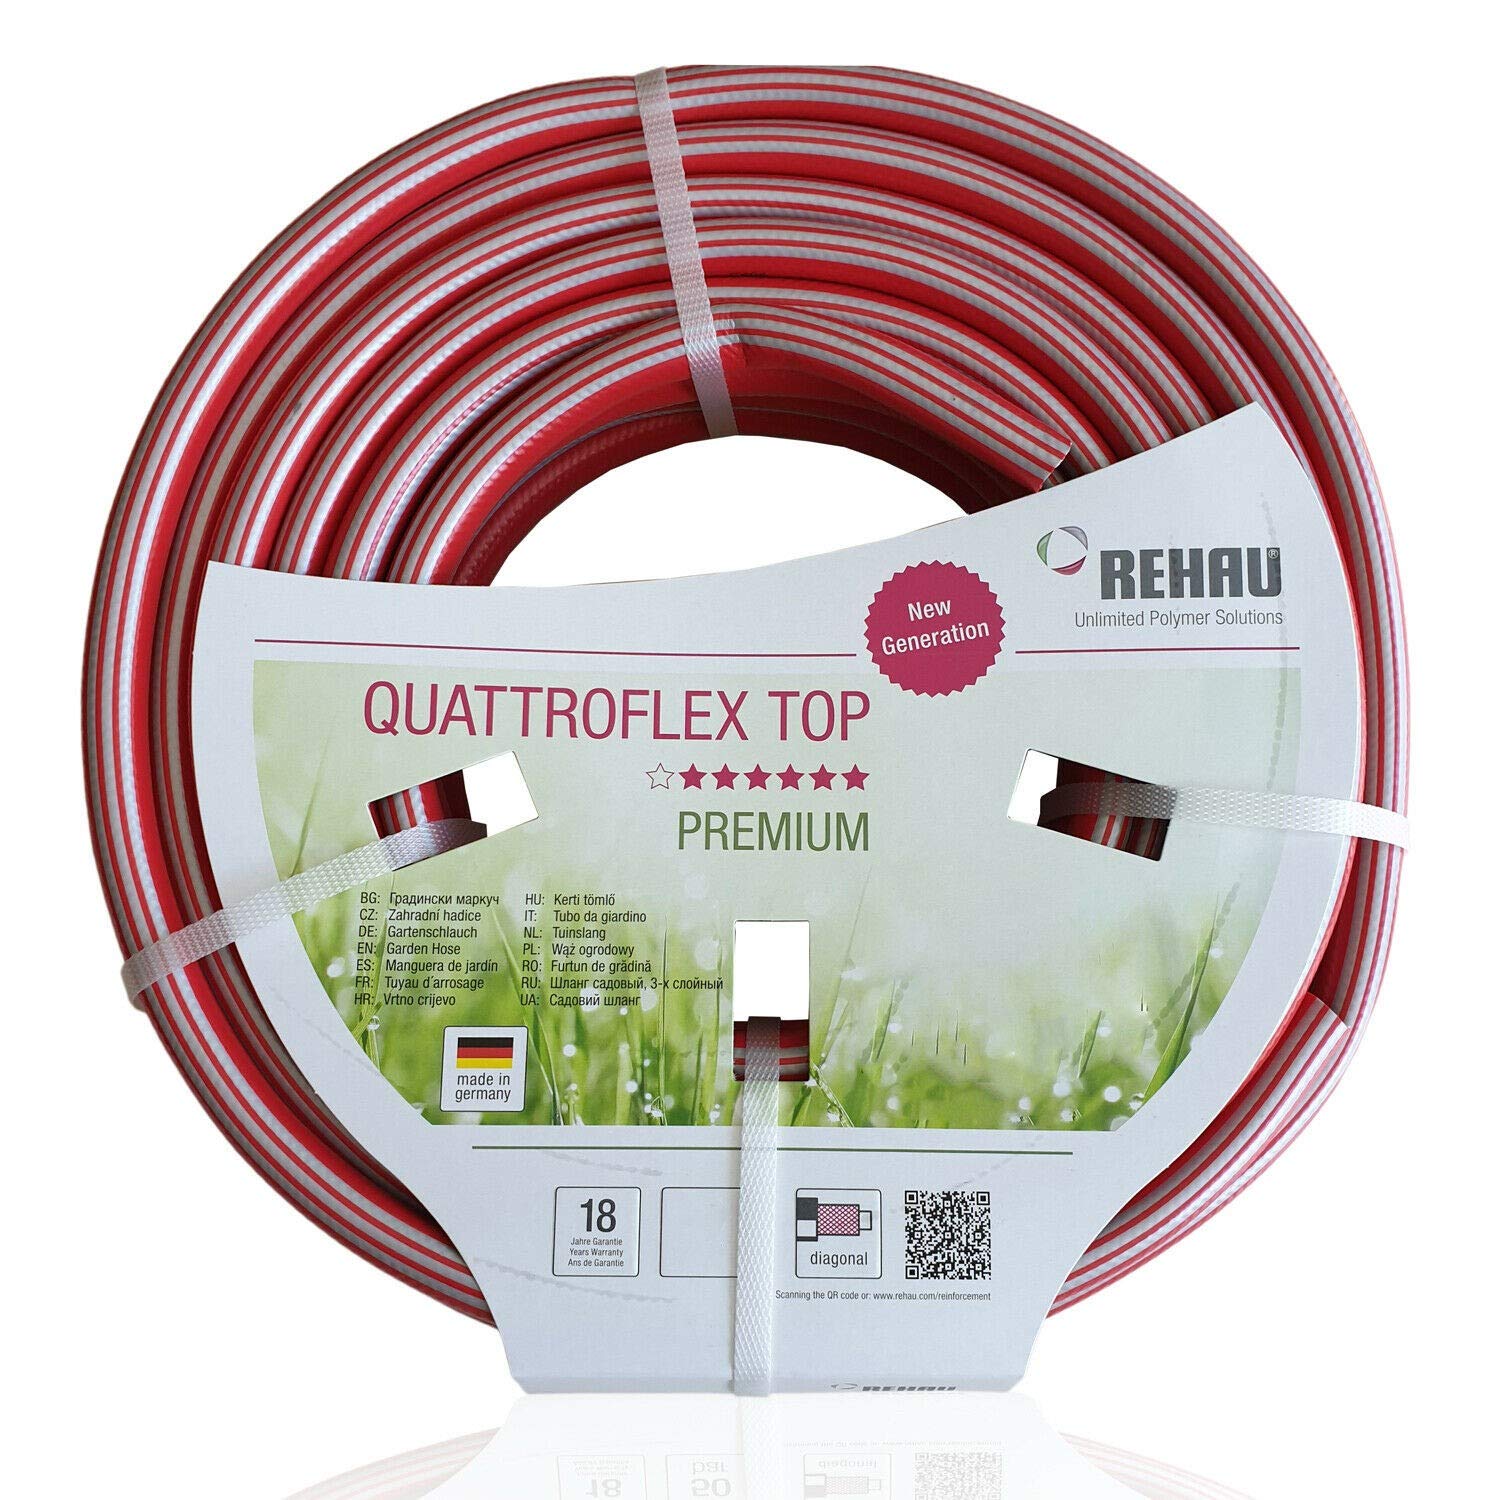 REHAU Premium-Gartenschlauch QUATTROFLEX TOP 1/2 Zoll 20m: sehr flexibel, kein verdrehen, extrem druckfest